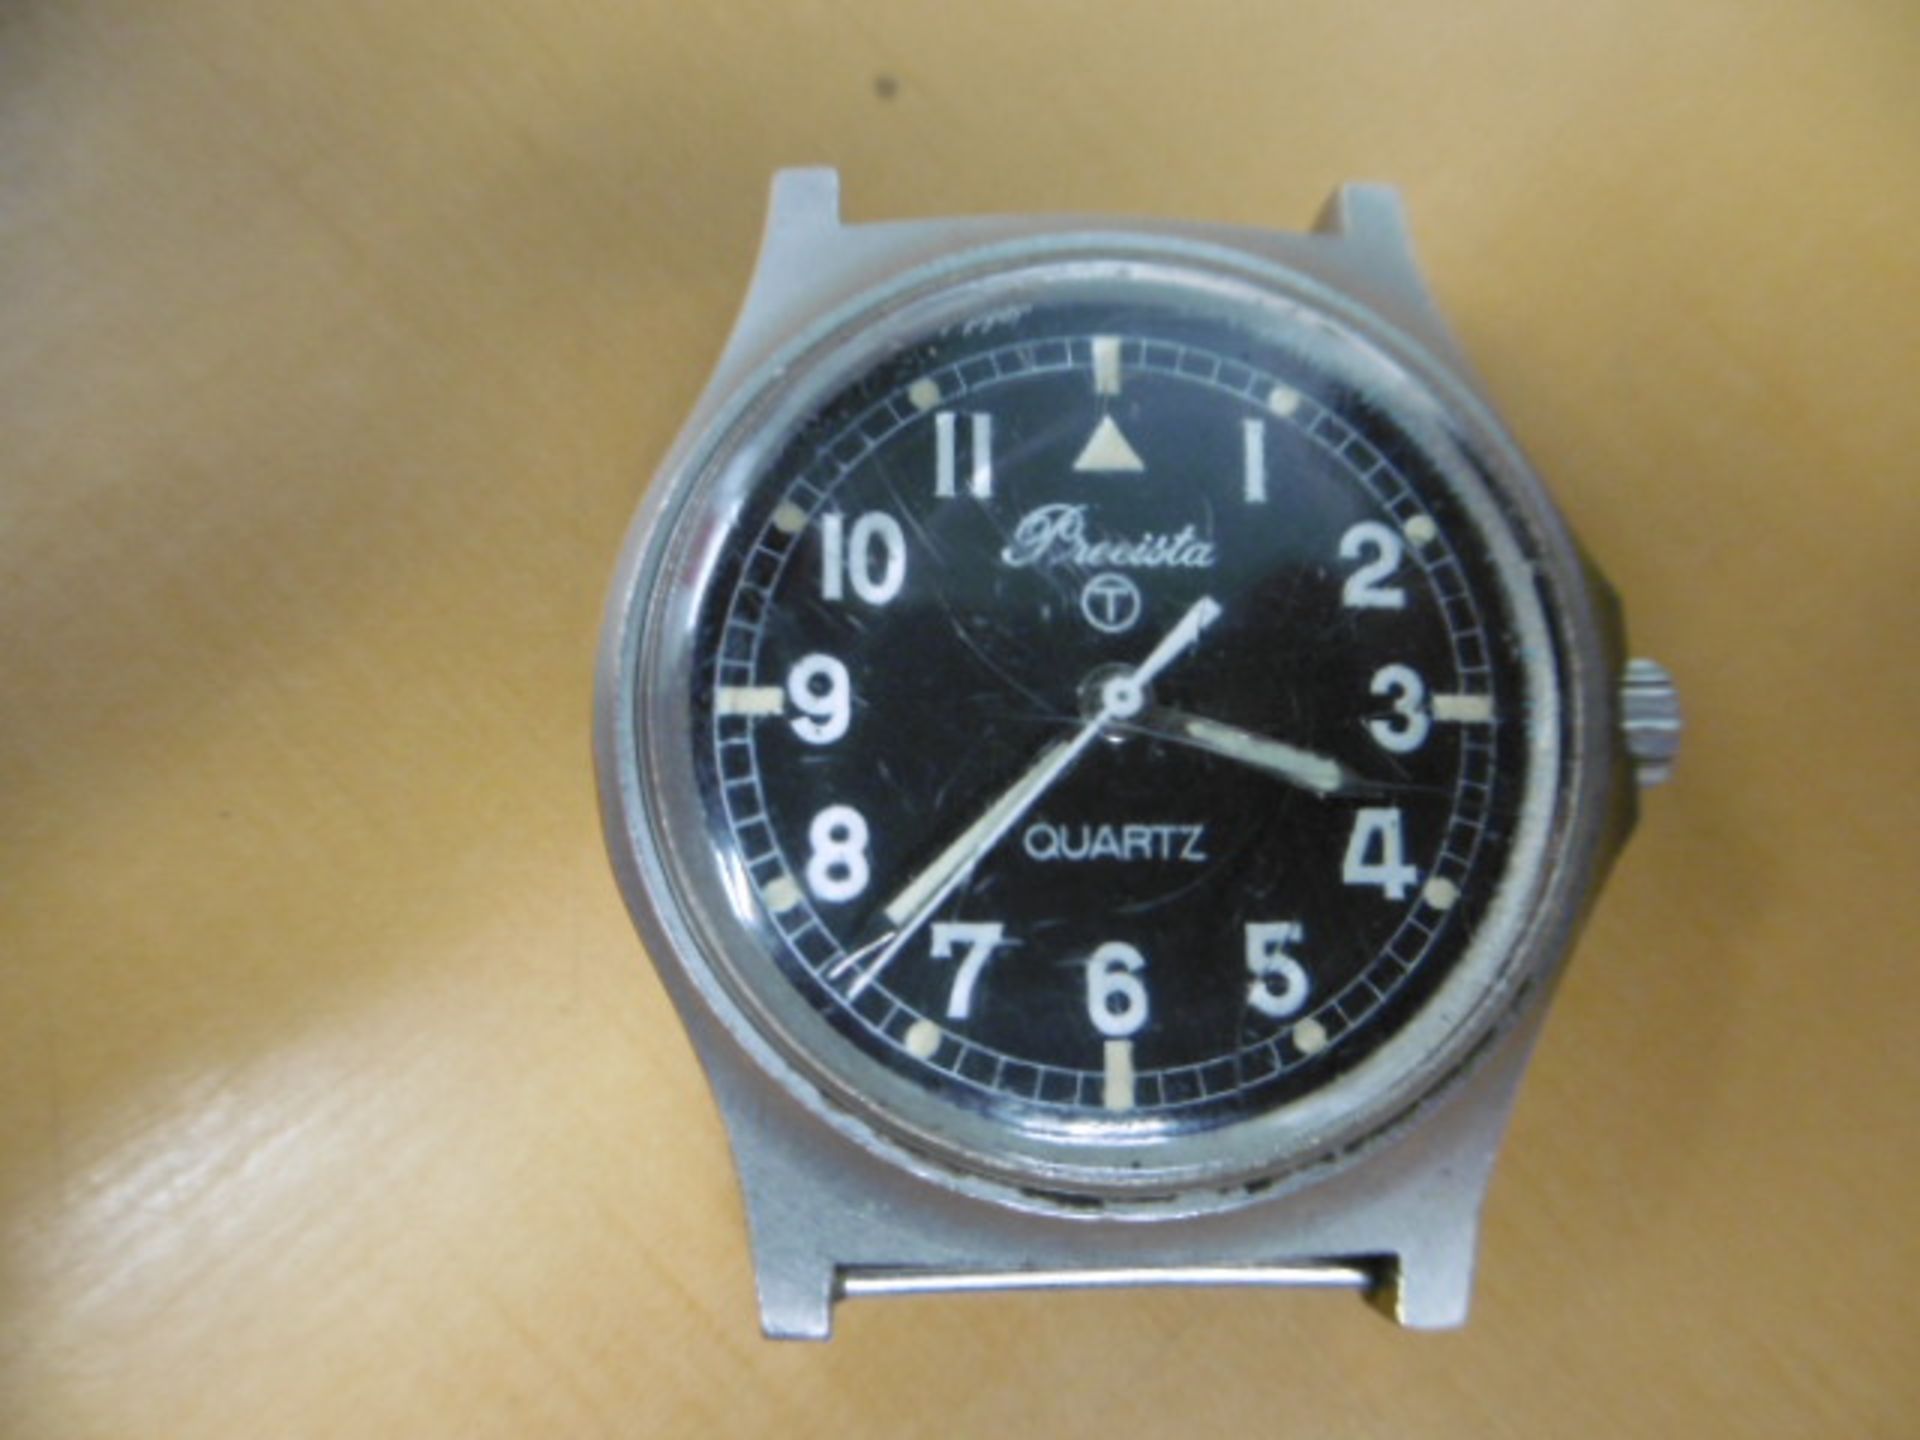 2 x Precista quartz wrist watches - Falklands Issue - Image 6 of 9